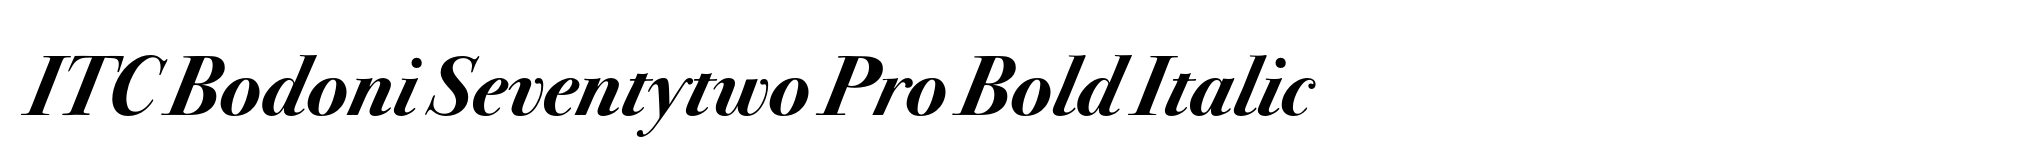 ITC Bodoni Seventytwo Pro Bold Italic image